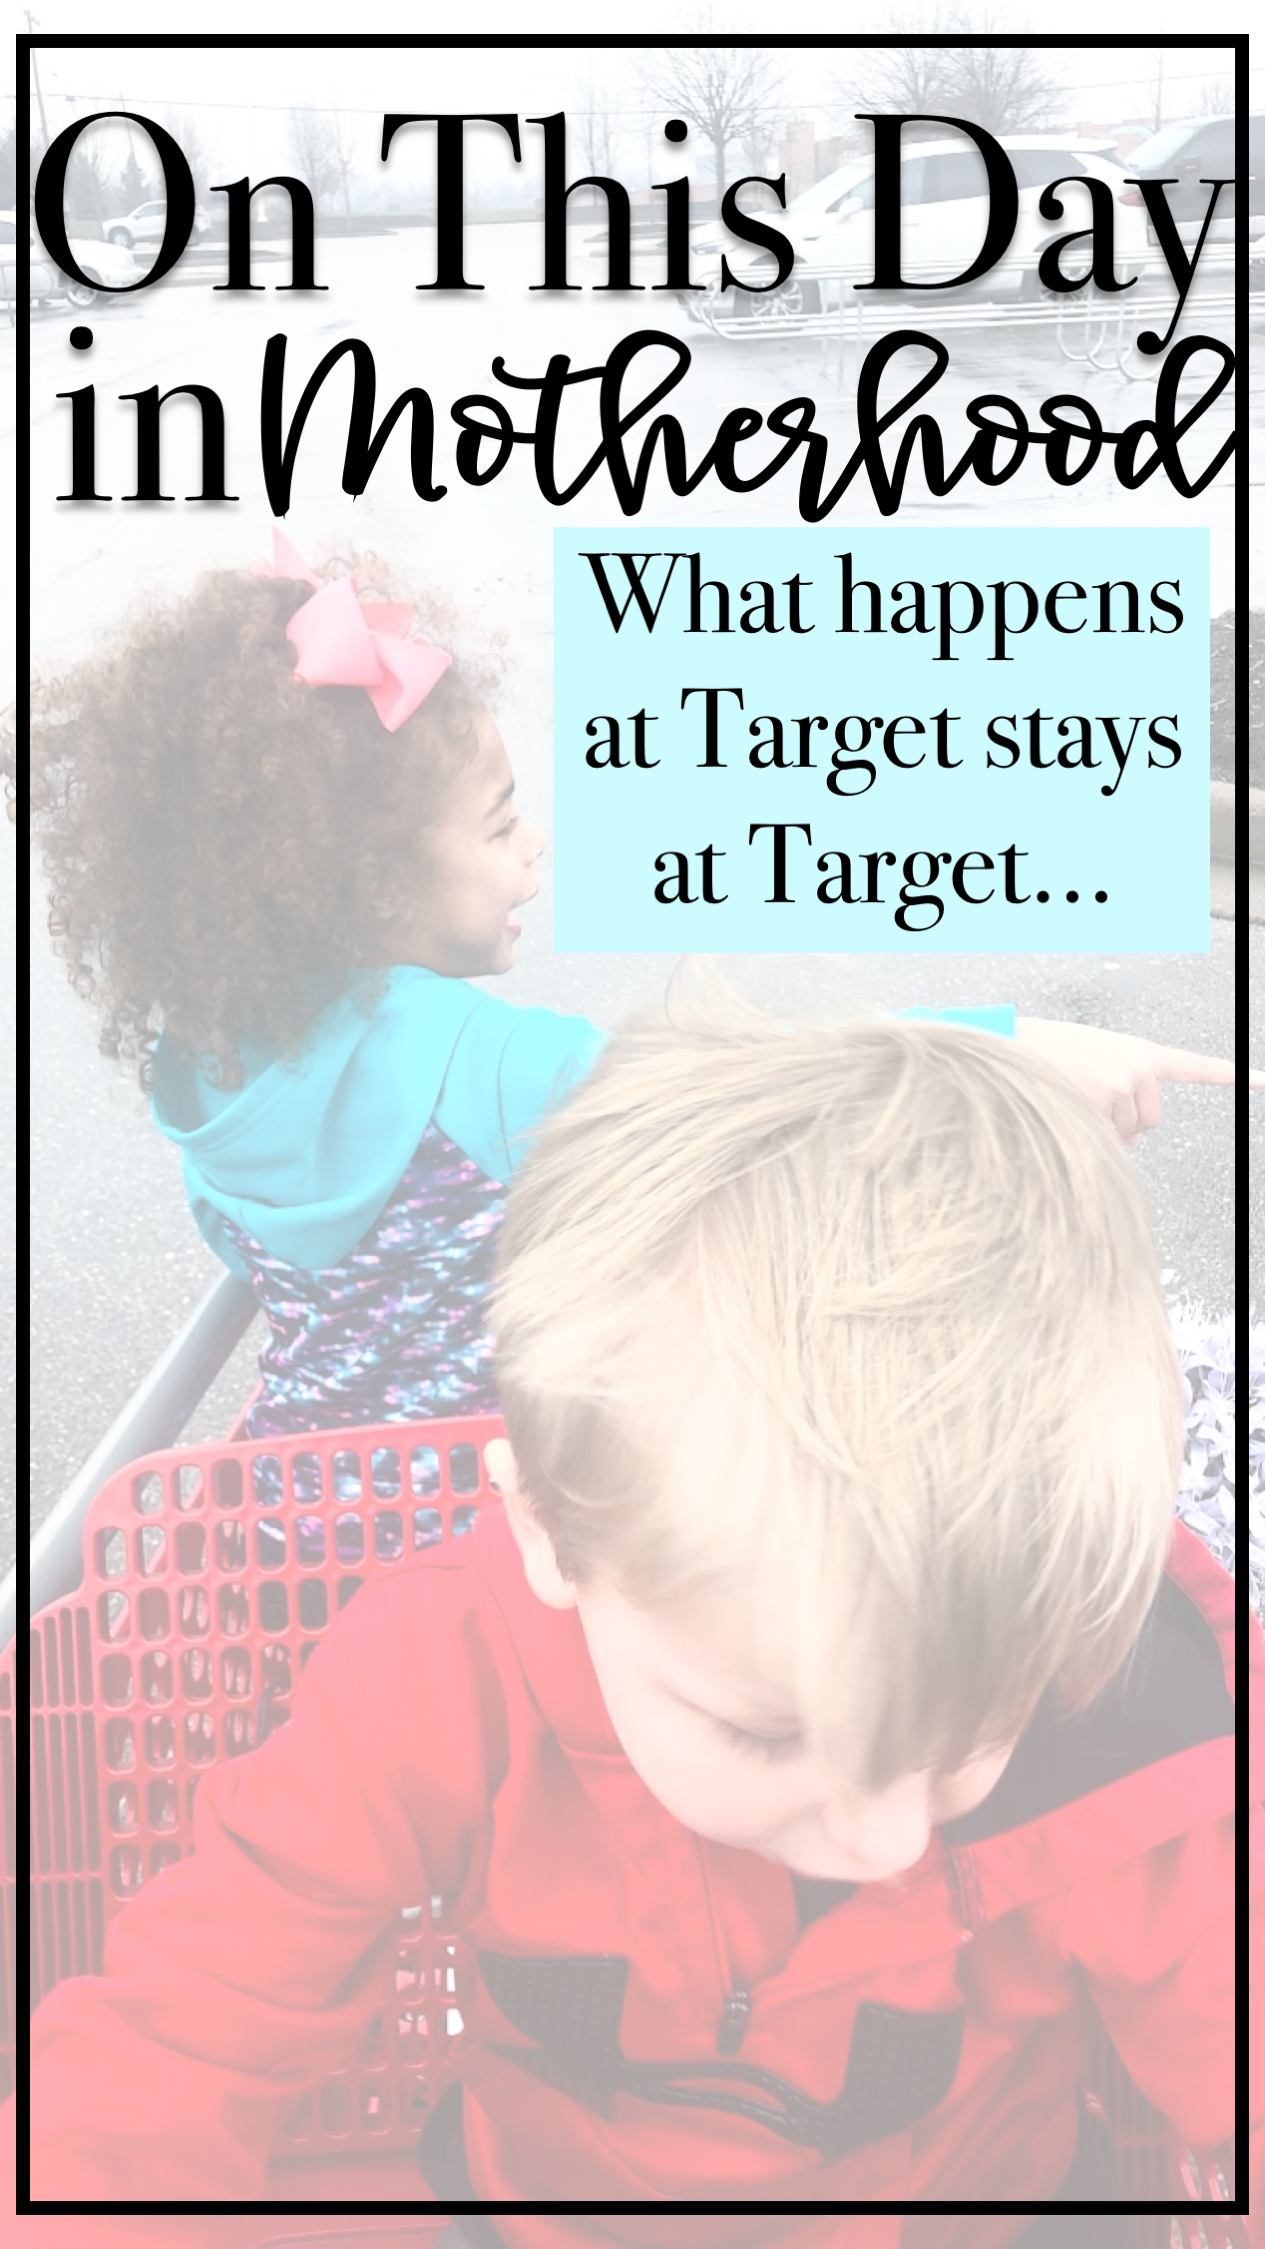 #parenting #mommyblogger #momsohard #target #onthisday #dollarspot #momlife #parenthood #toddlers #preschoolers